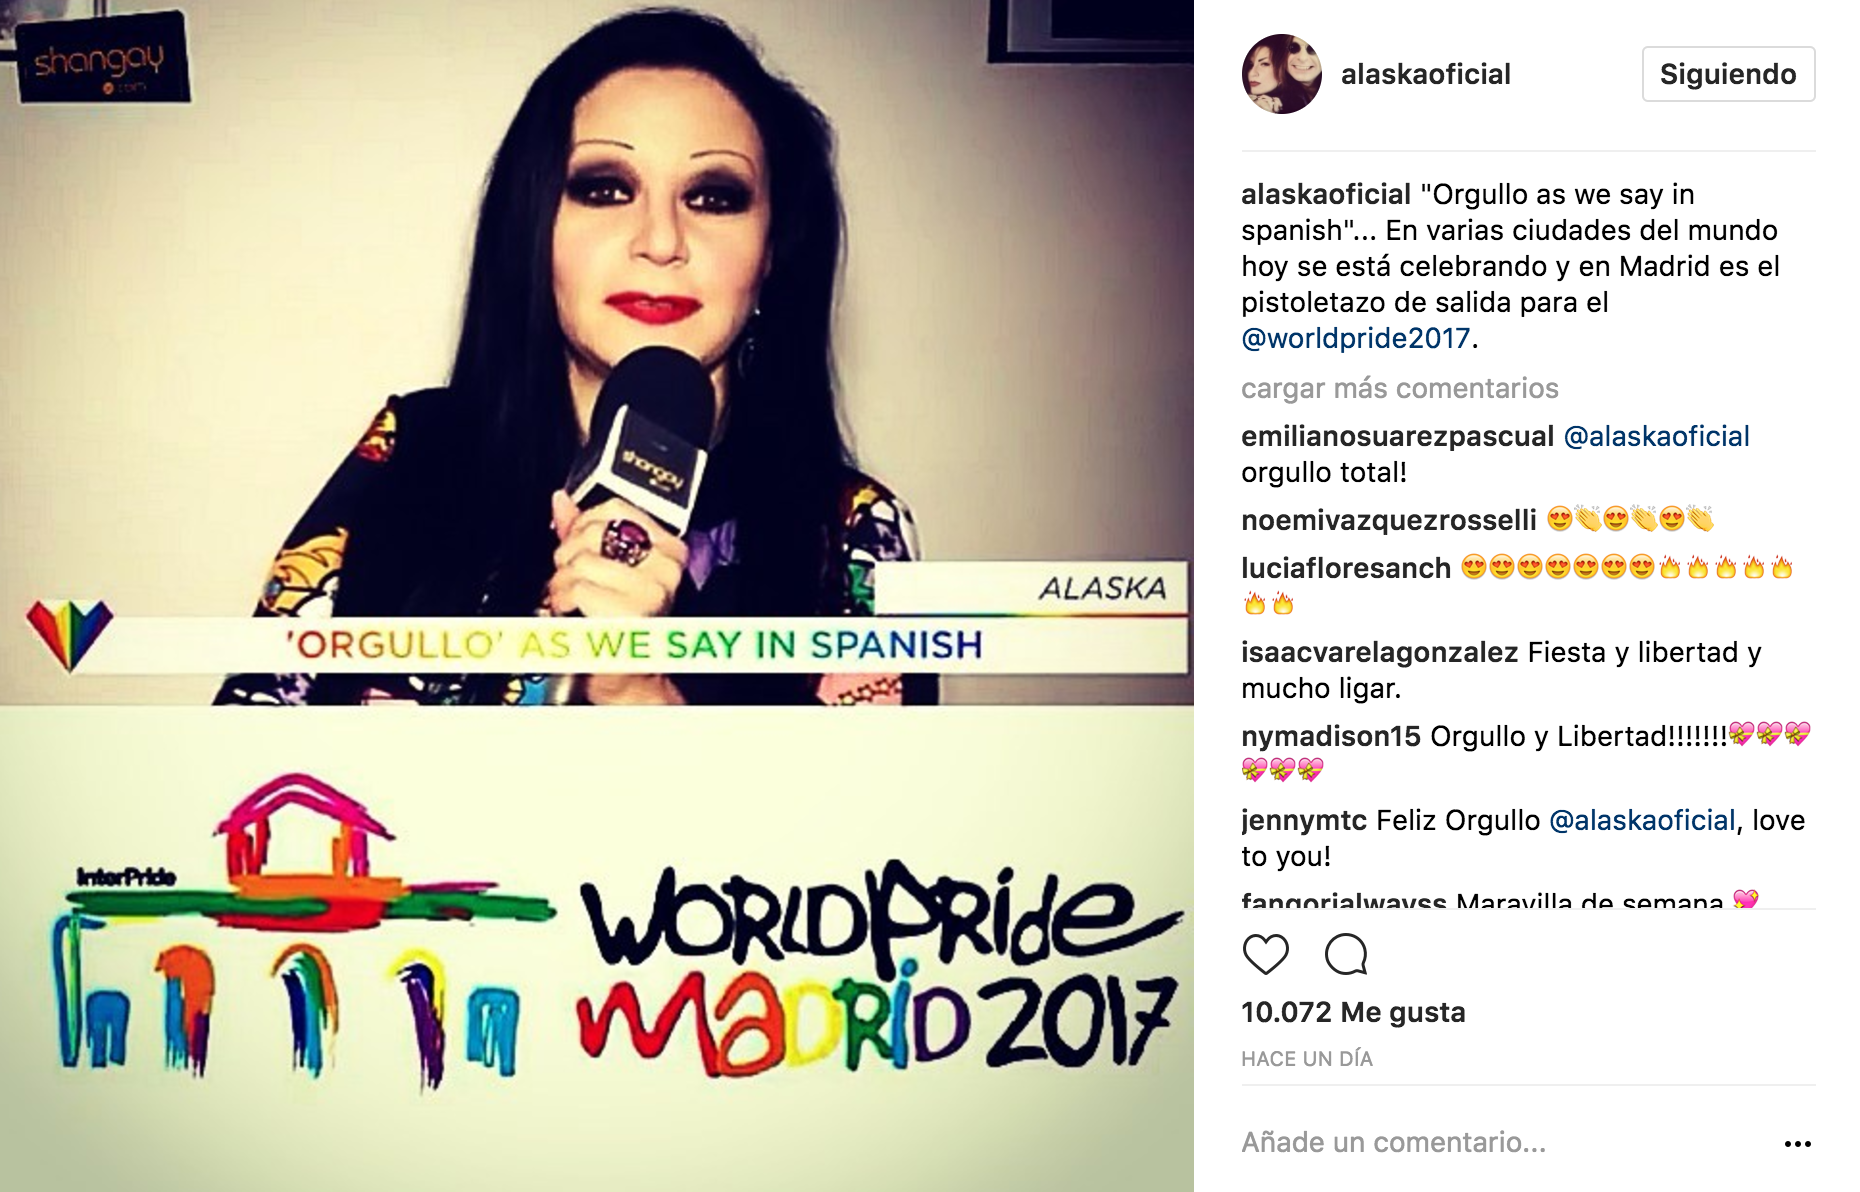 Antonio Banderas se une al WorldPride Madrid 2017